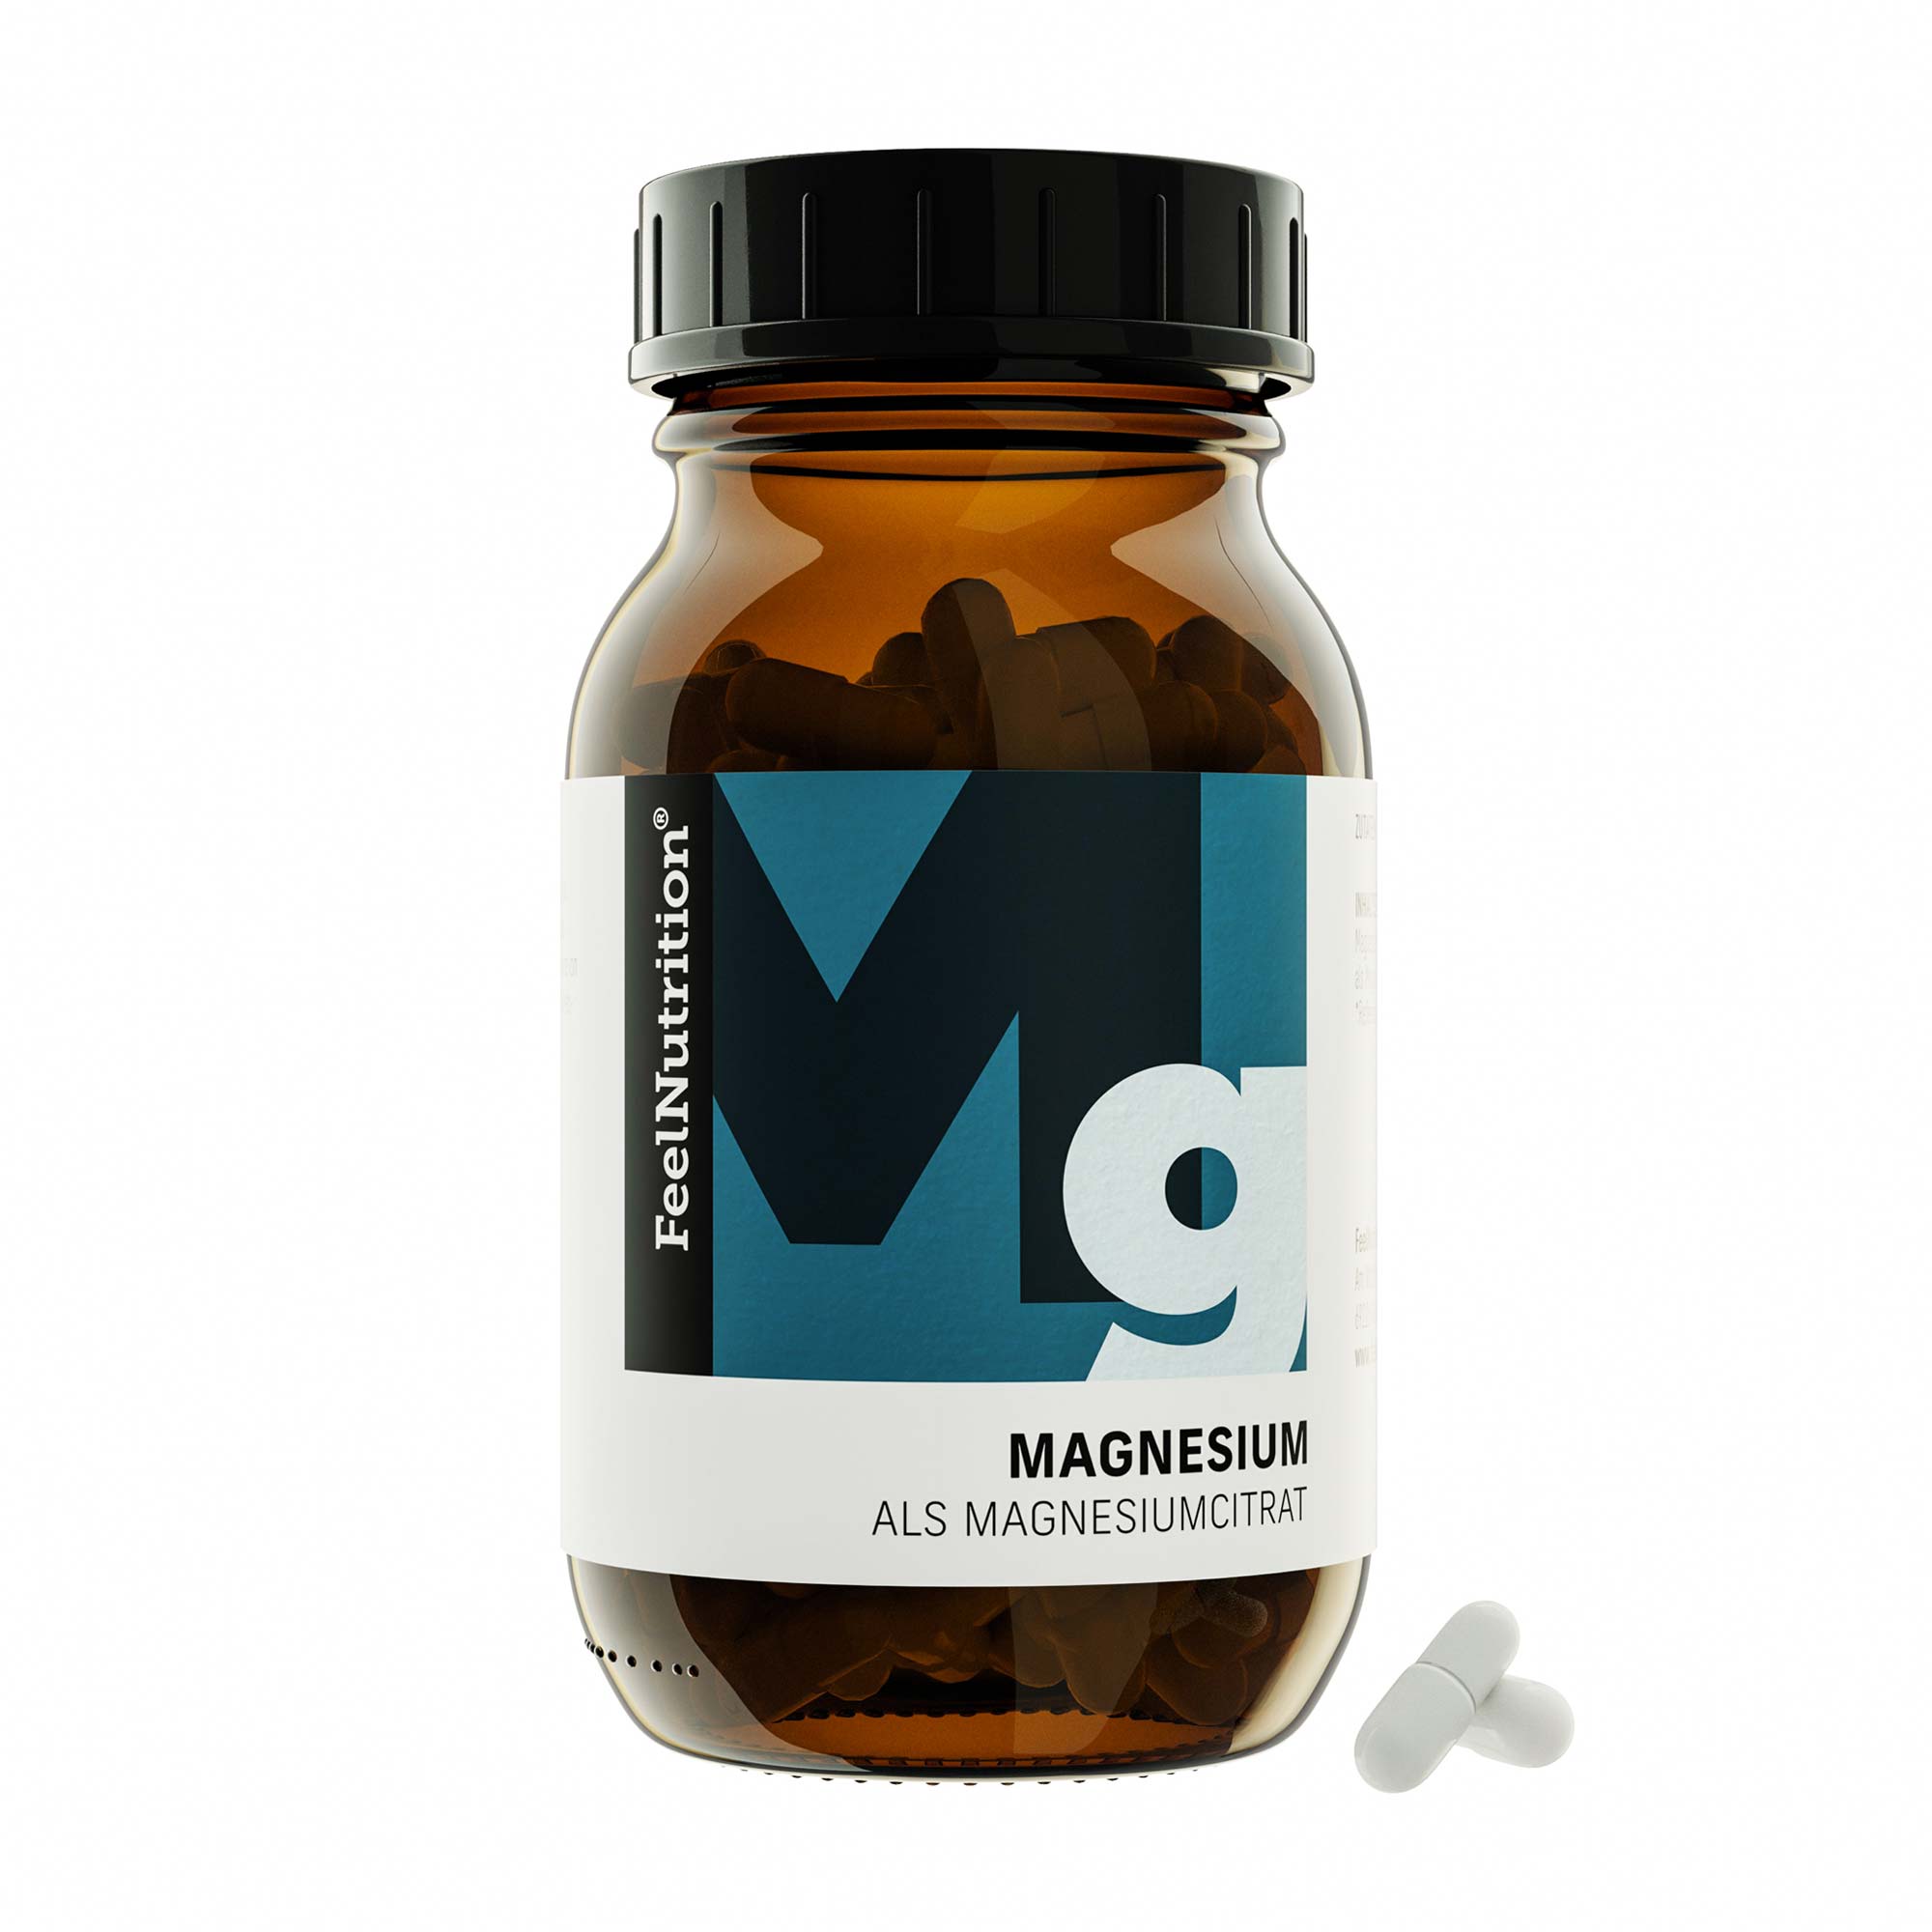 Magnesium als Magnesiumcitrat